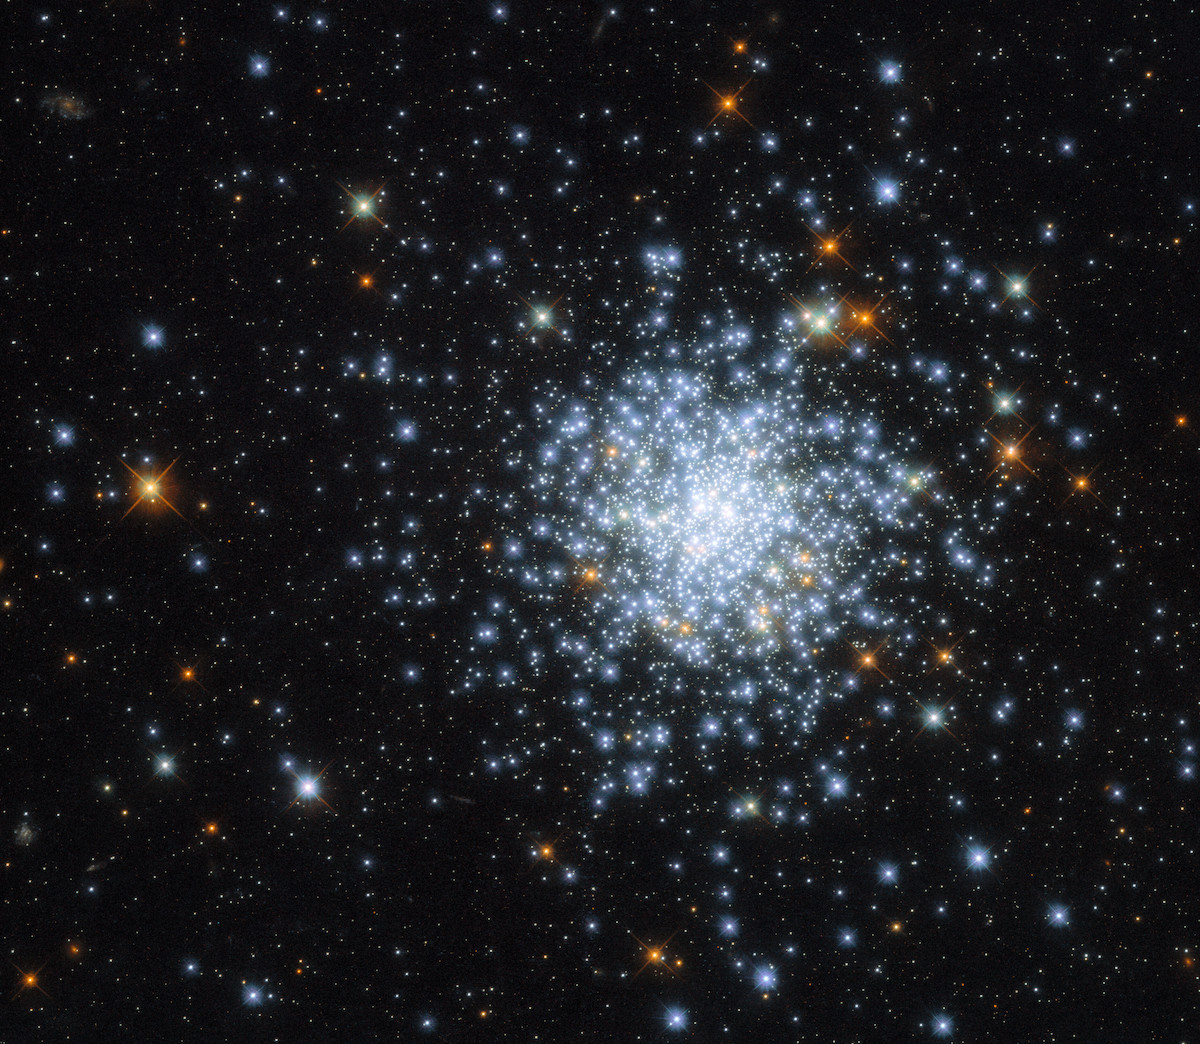 © ESA/Hubble & NASA, J. Kalirai, A. Milone; CC BY 4.0